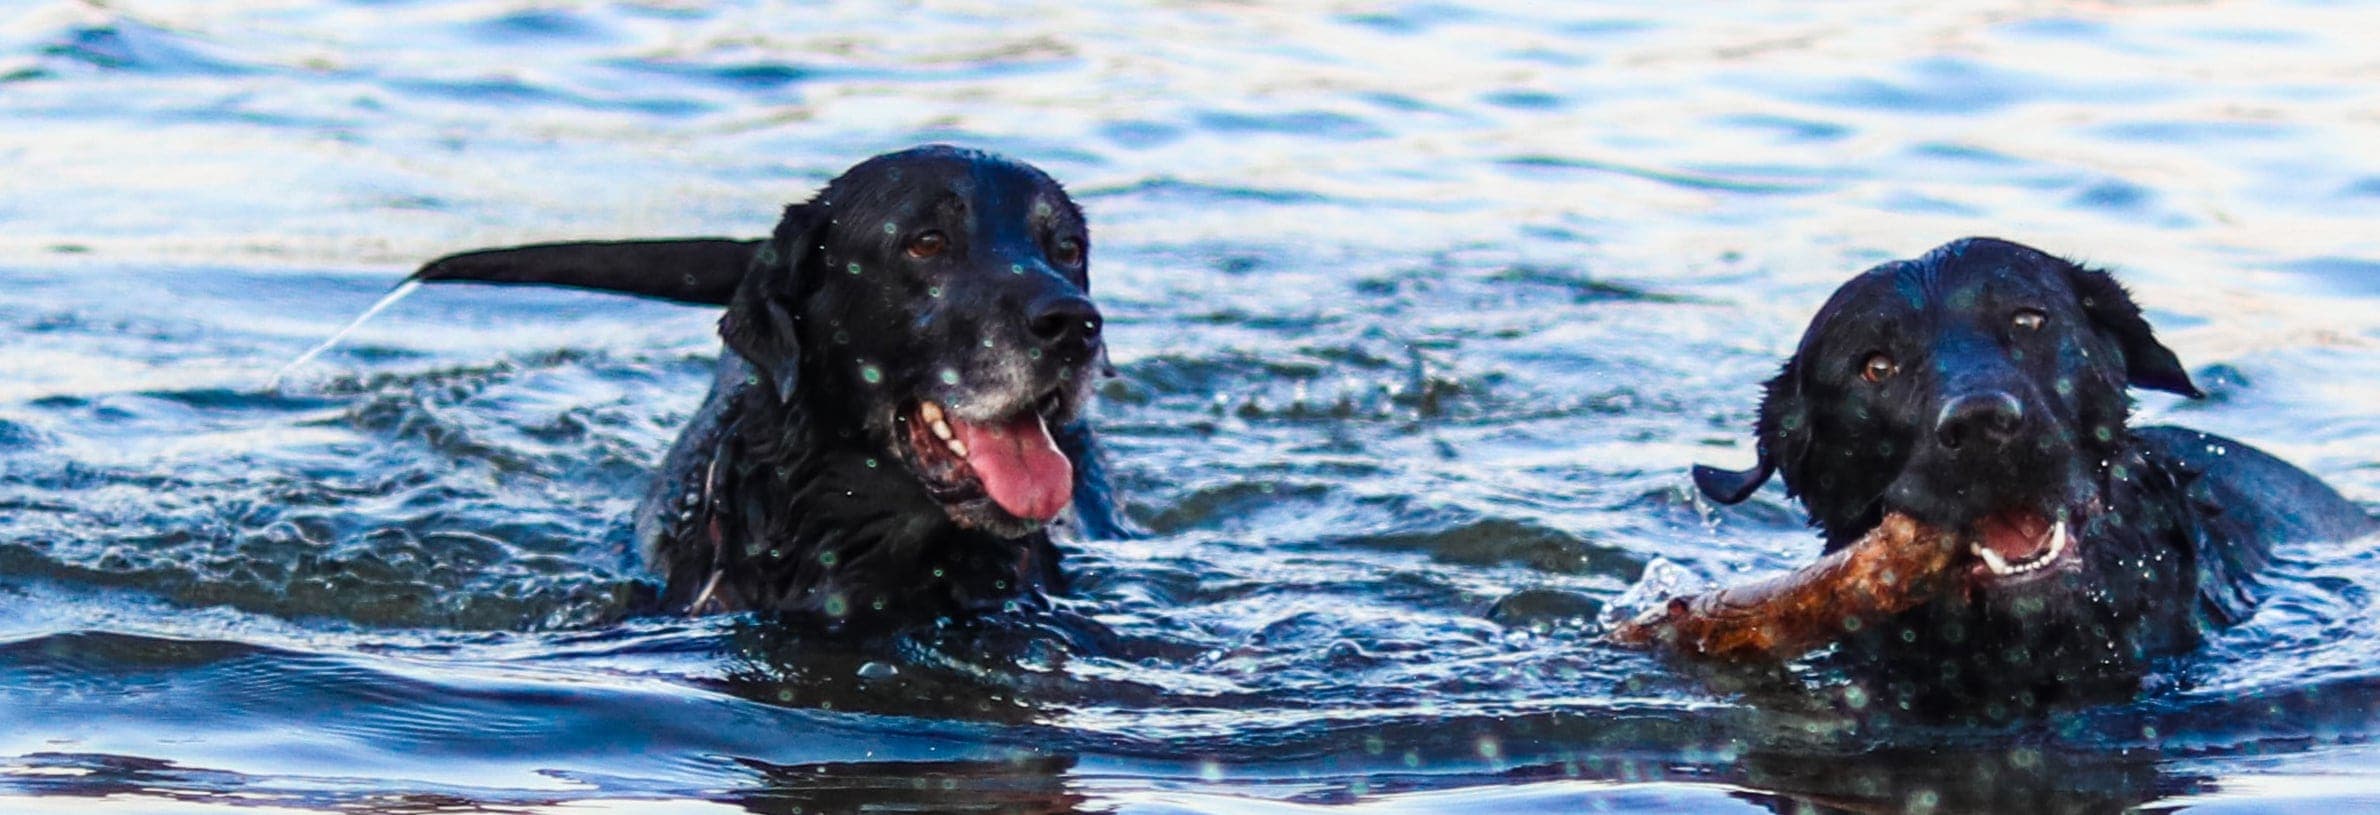 Hond leren zwemmen in 6 stappen!